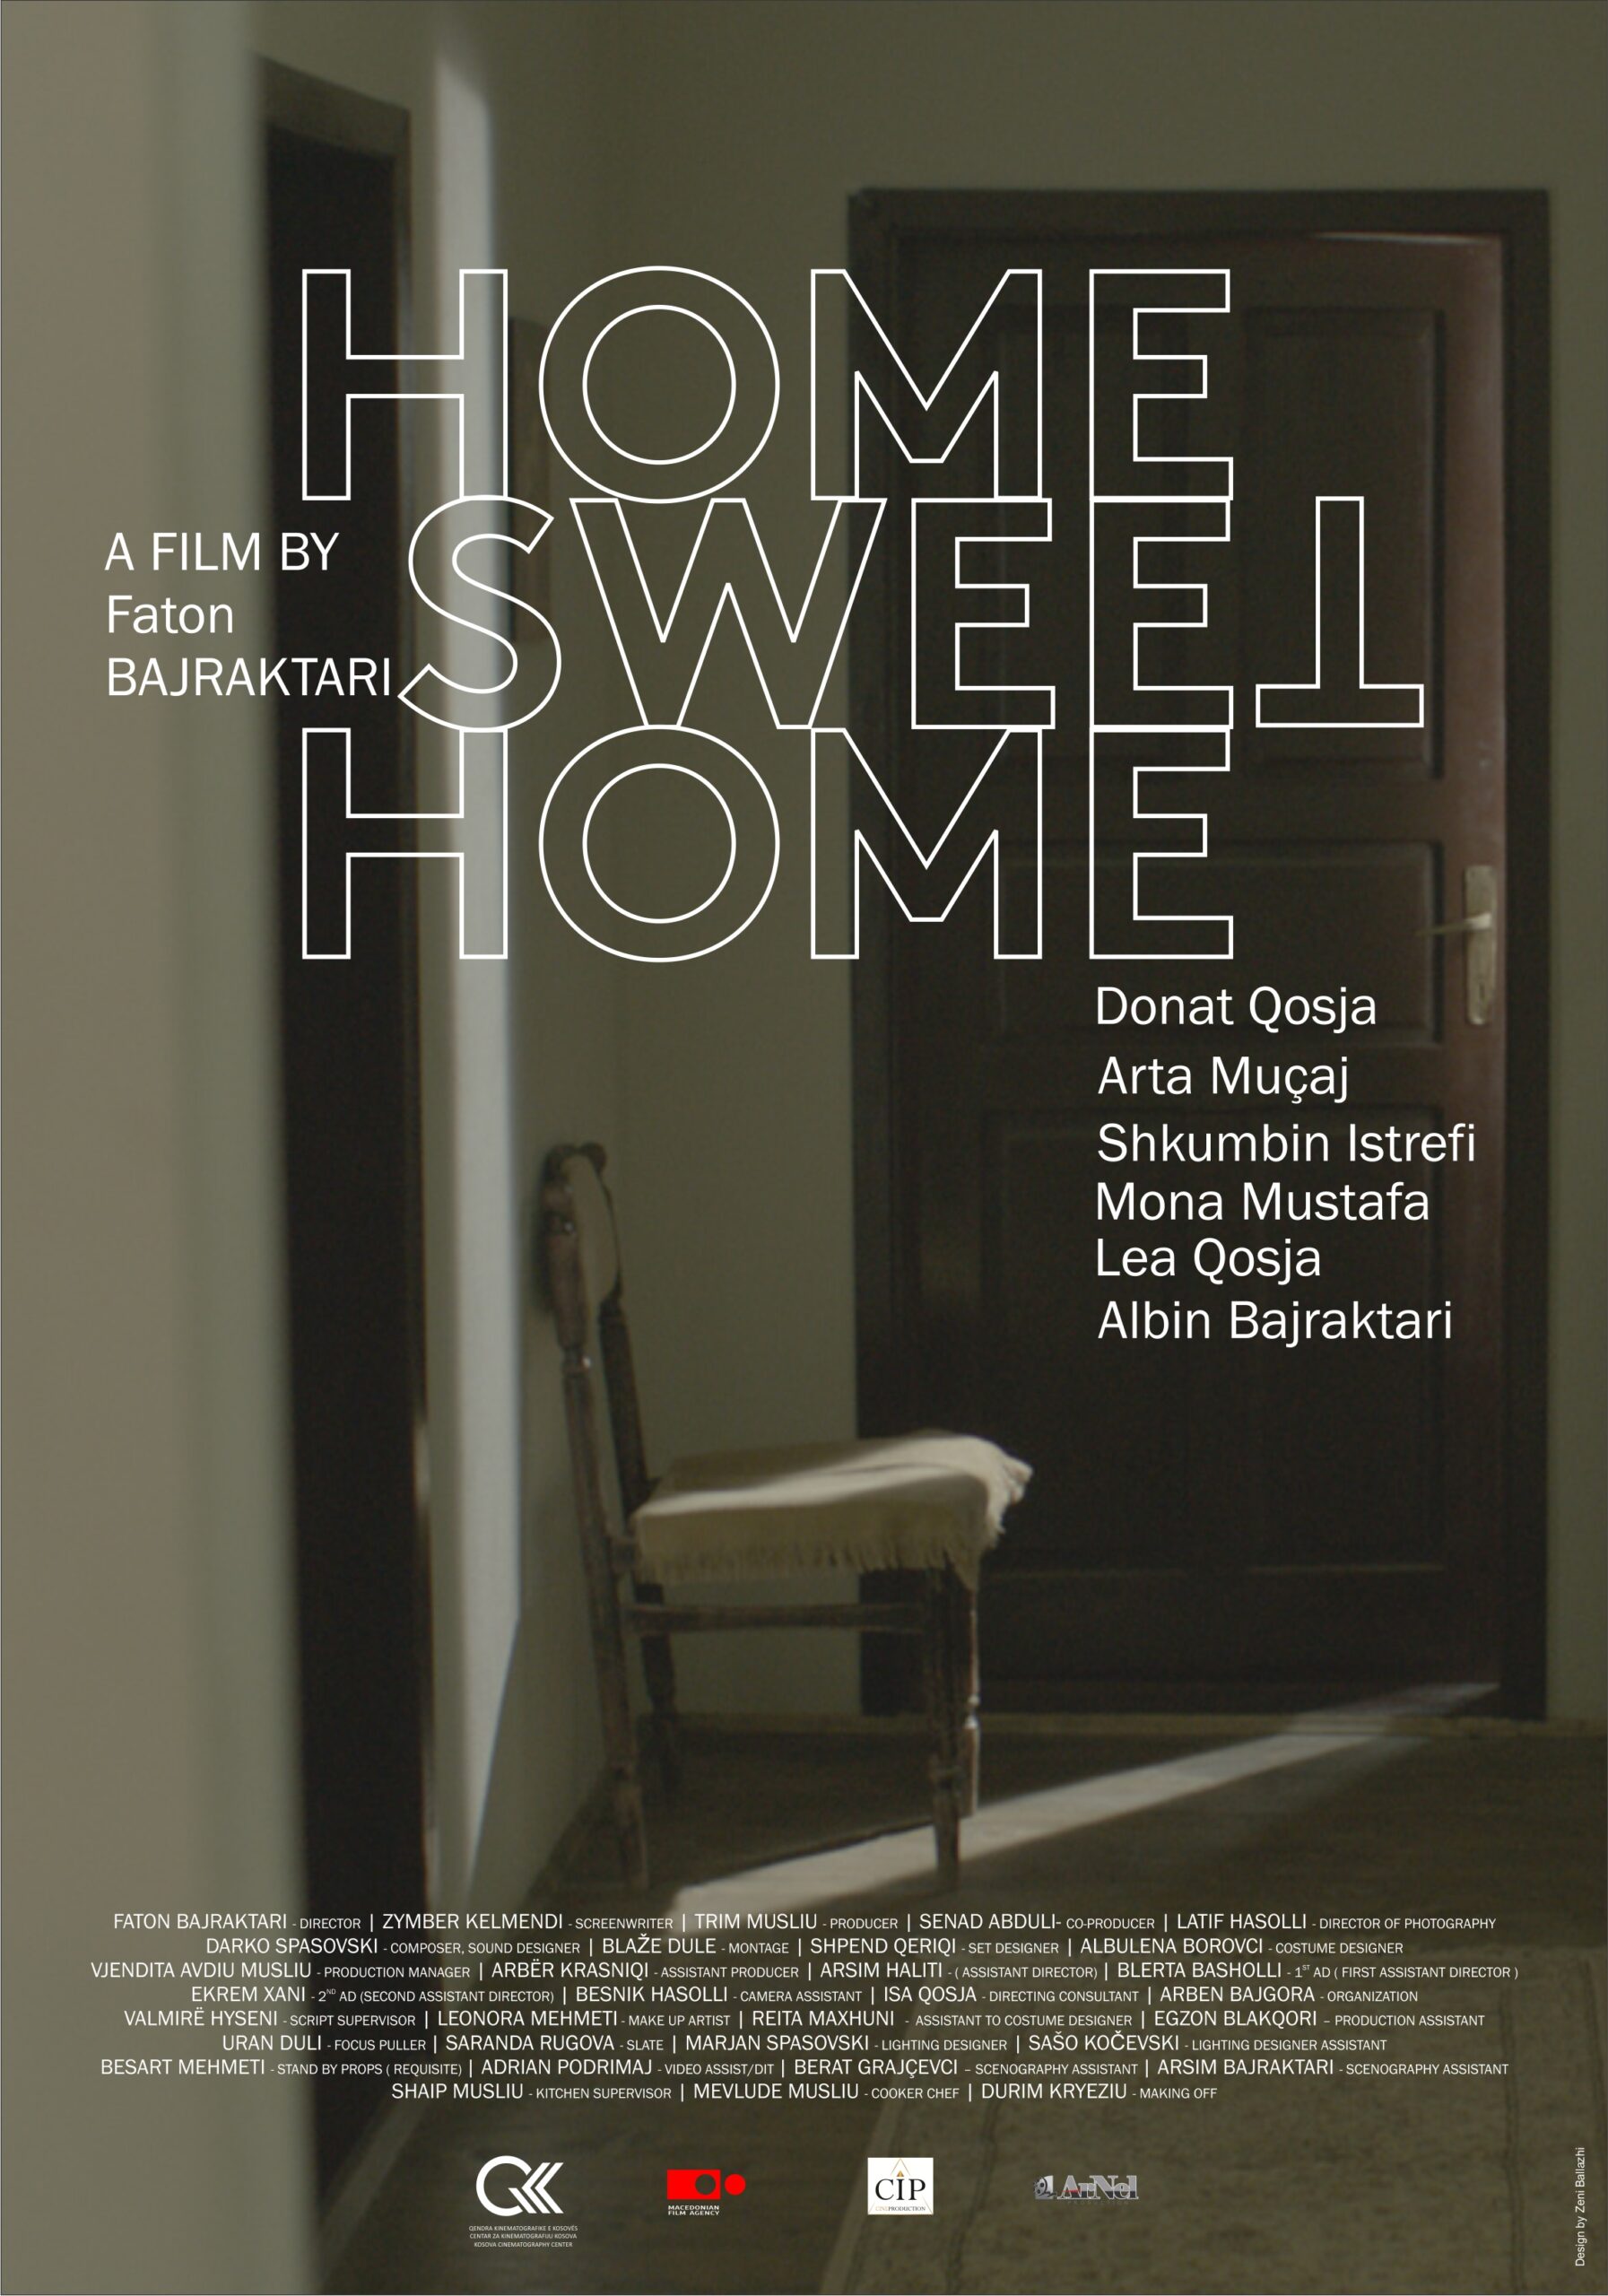 Home sweet home – 90 Minutes, Faton Bajraktari, Kosovo